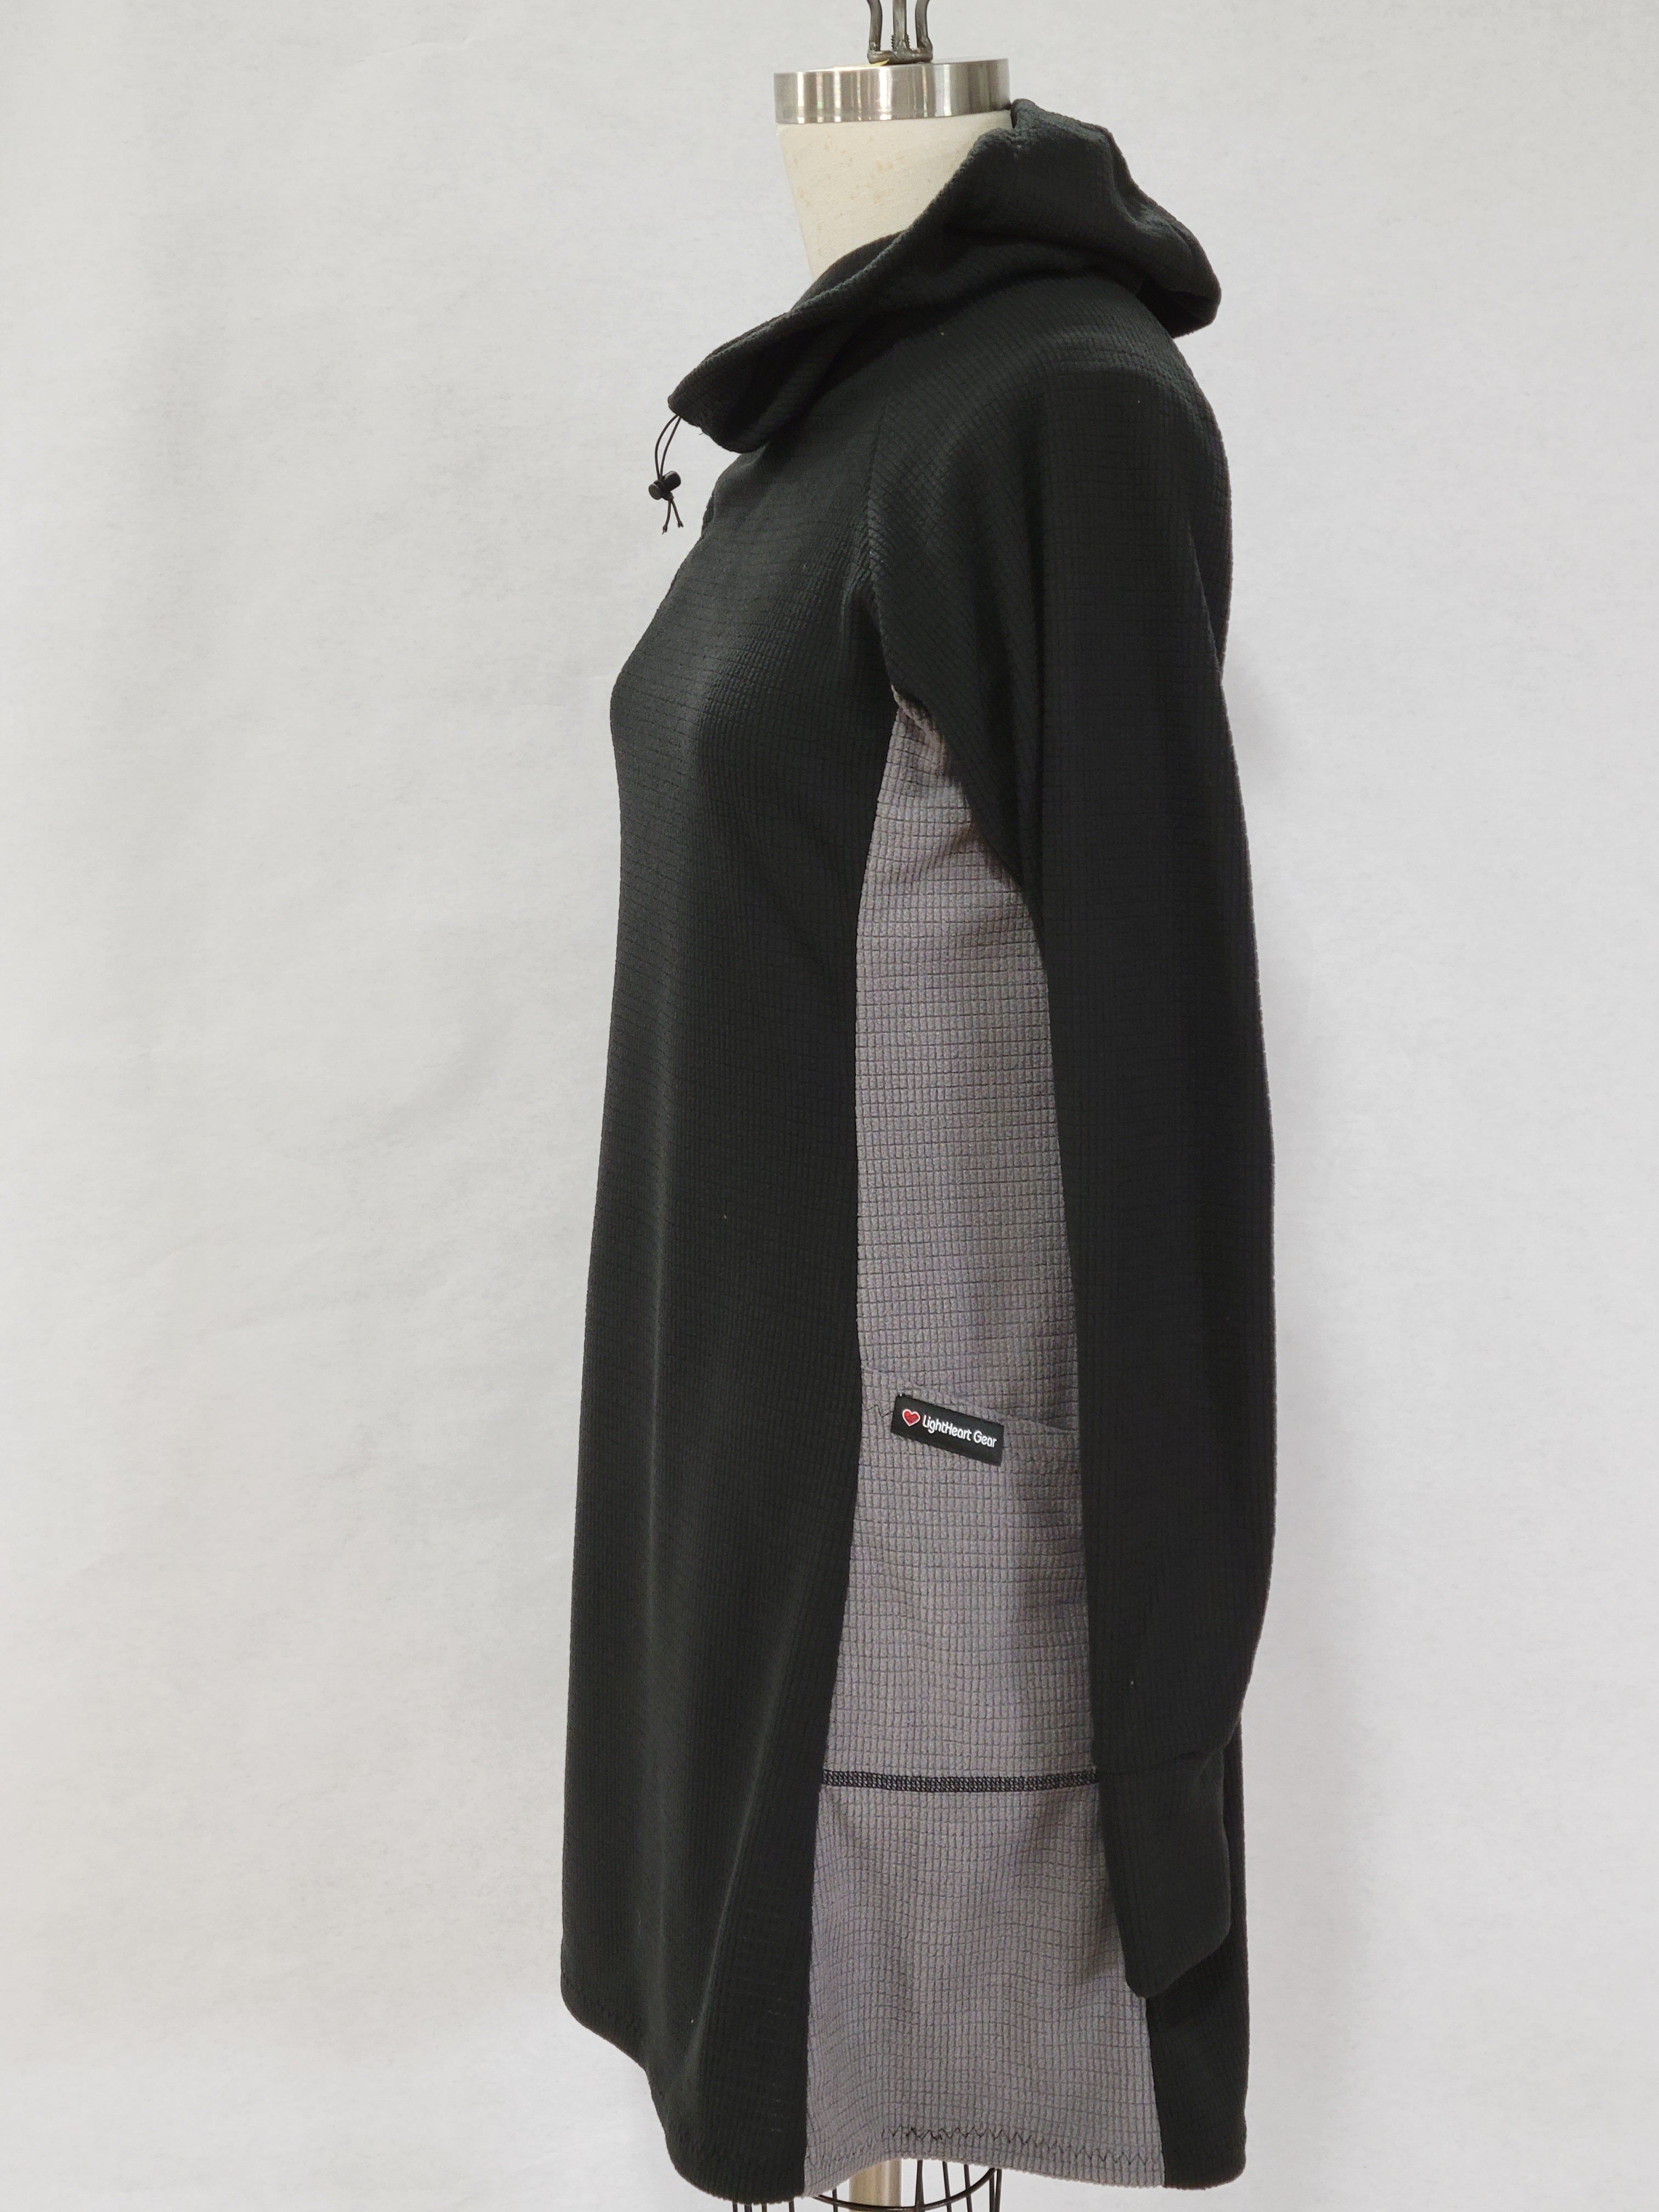 Fleece dress - X-Small – LightHeart Gear